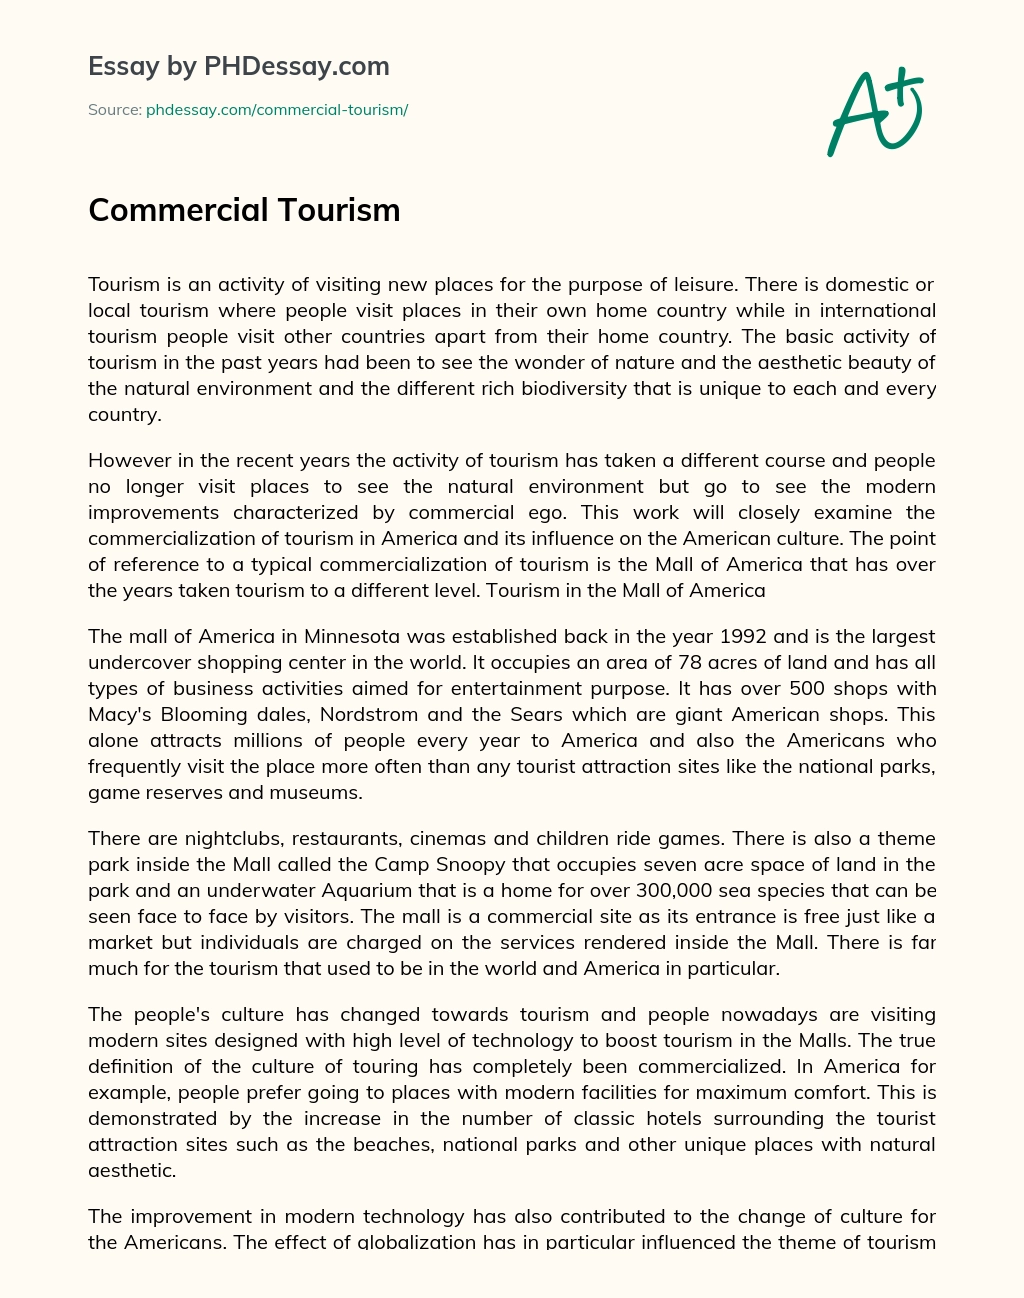 Commercial Tourism essay